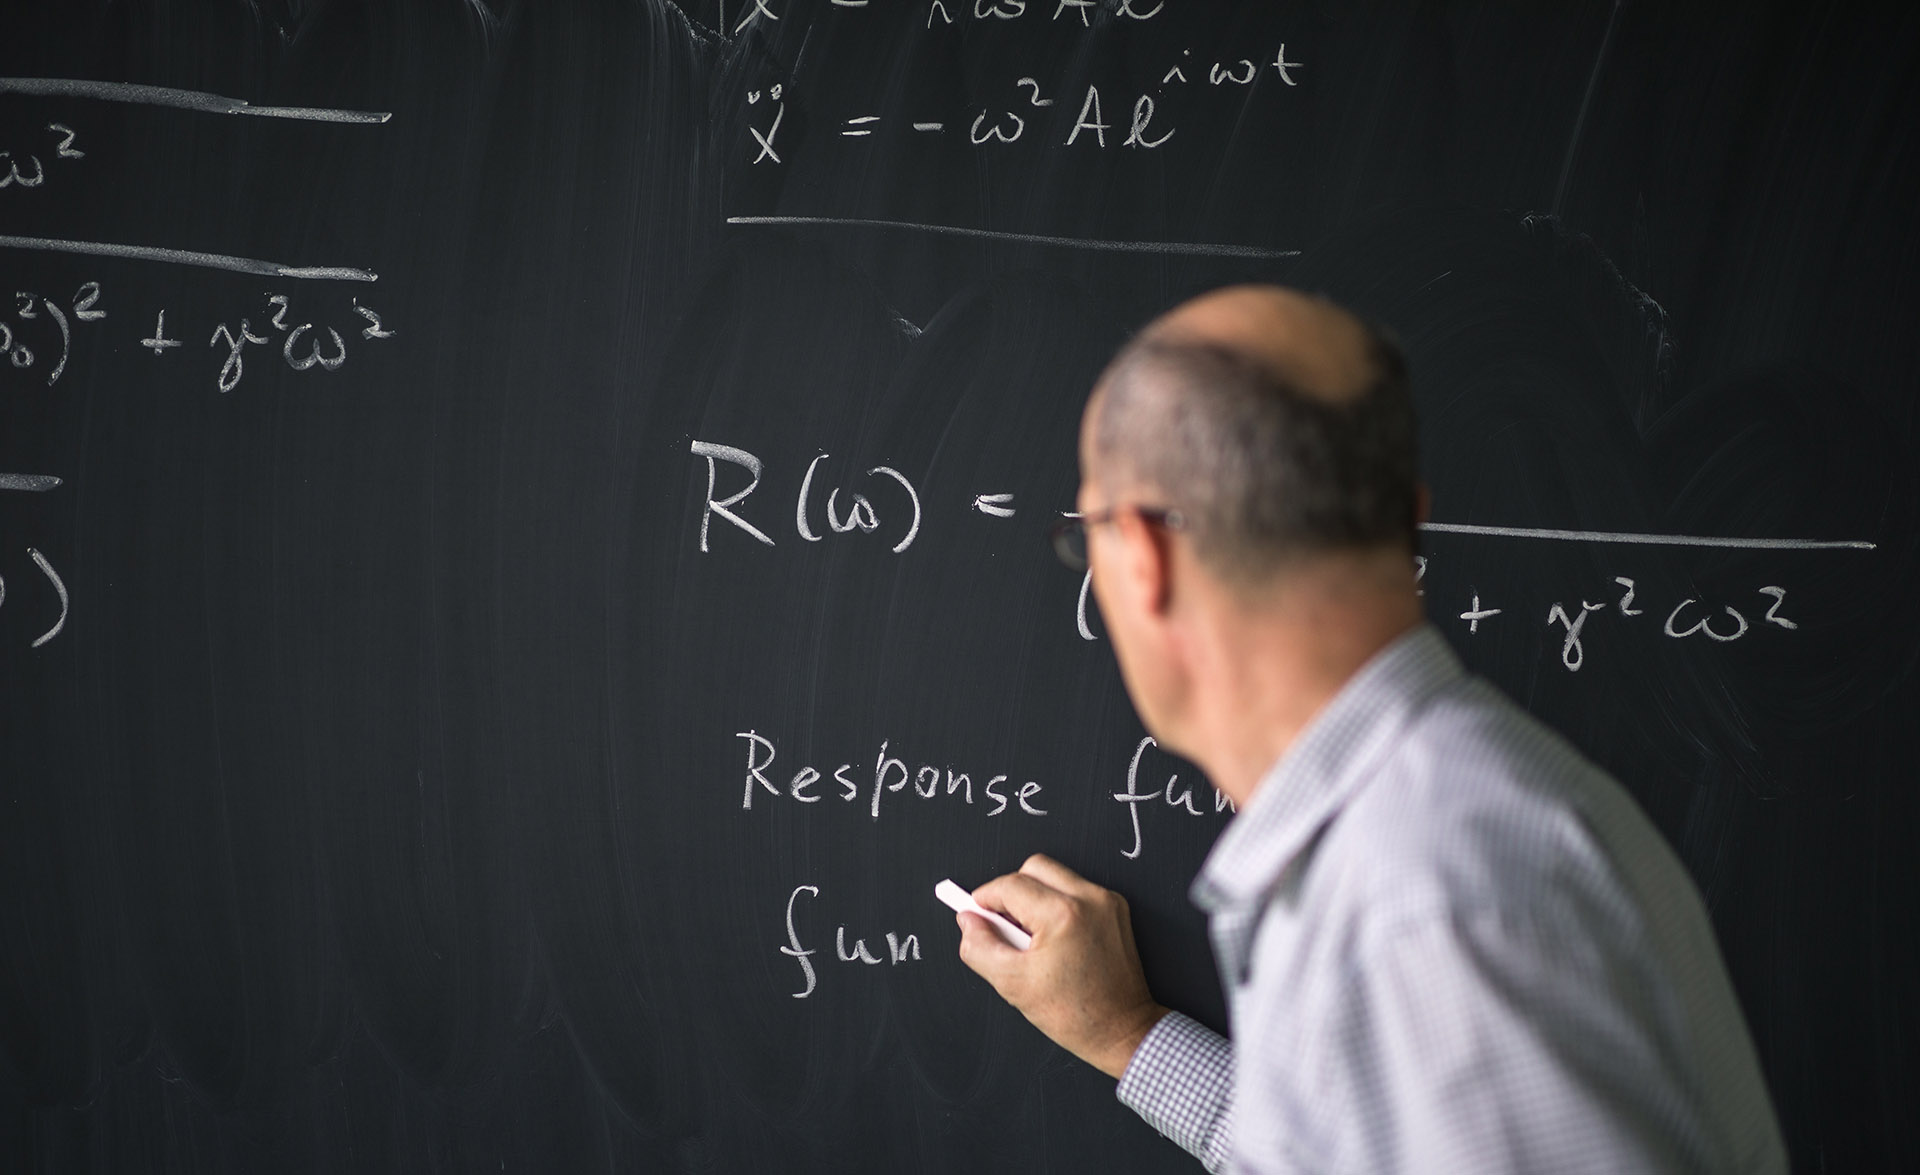 En lärare står och skriver på svarta tavlan.